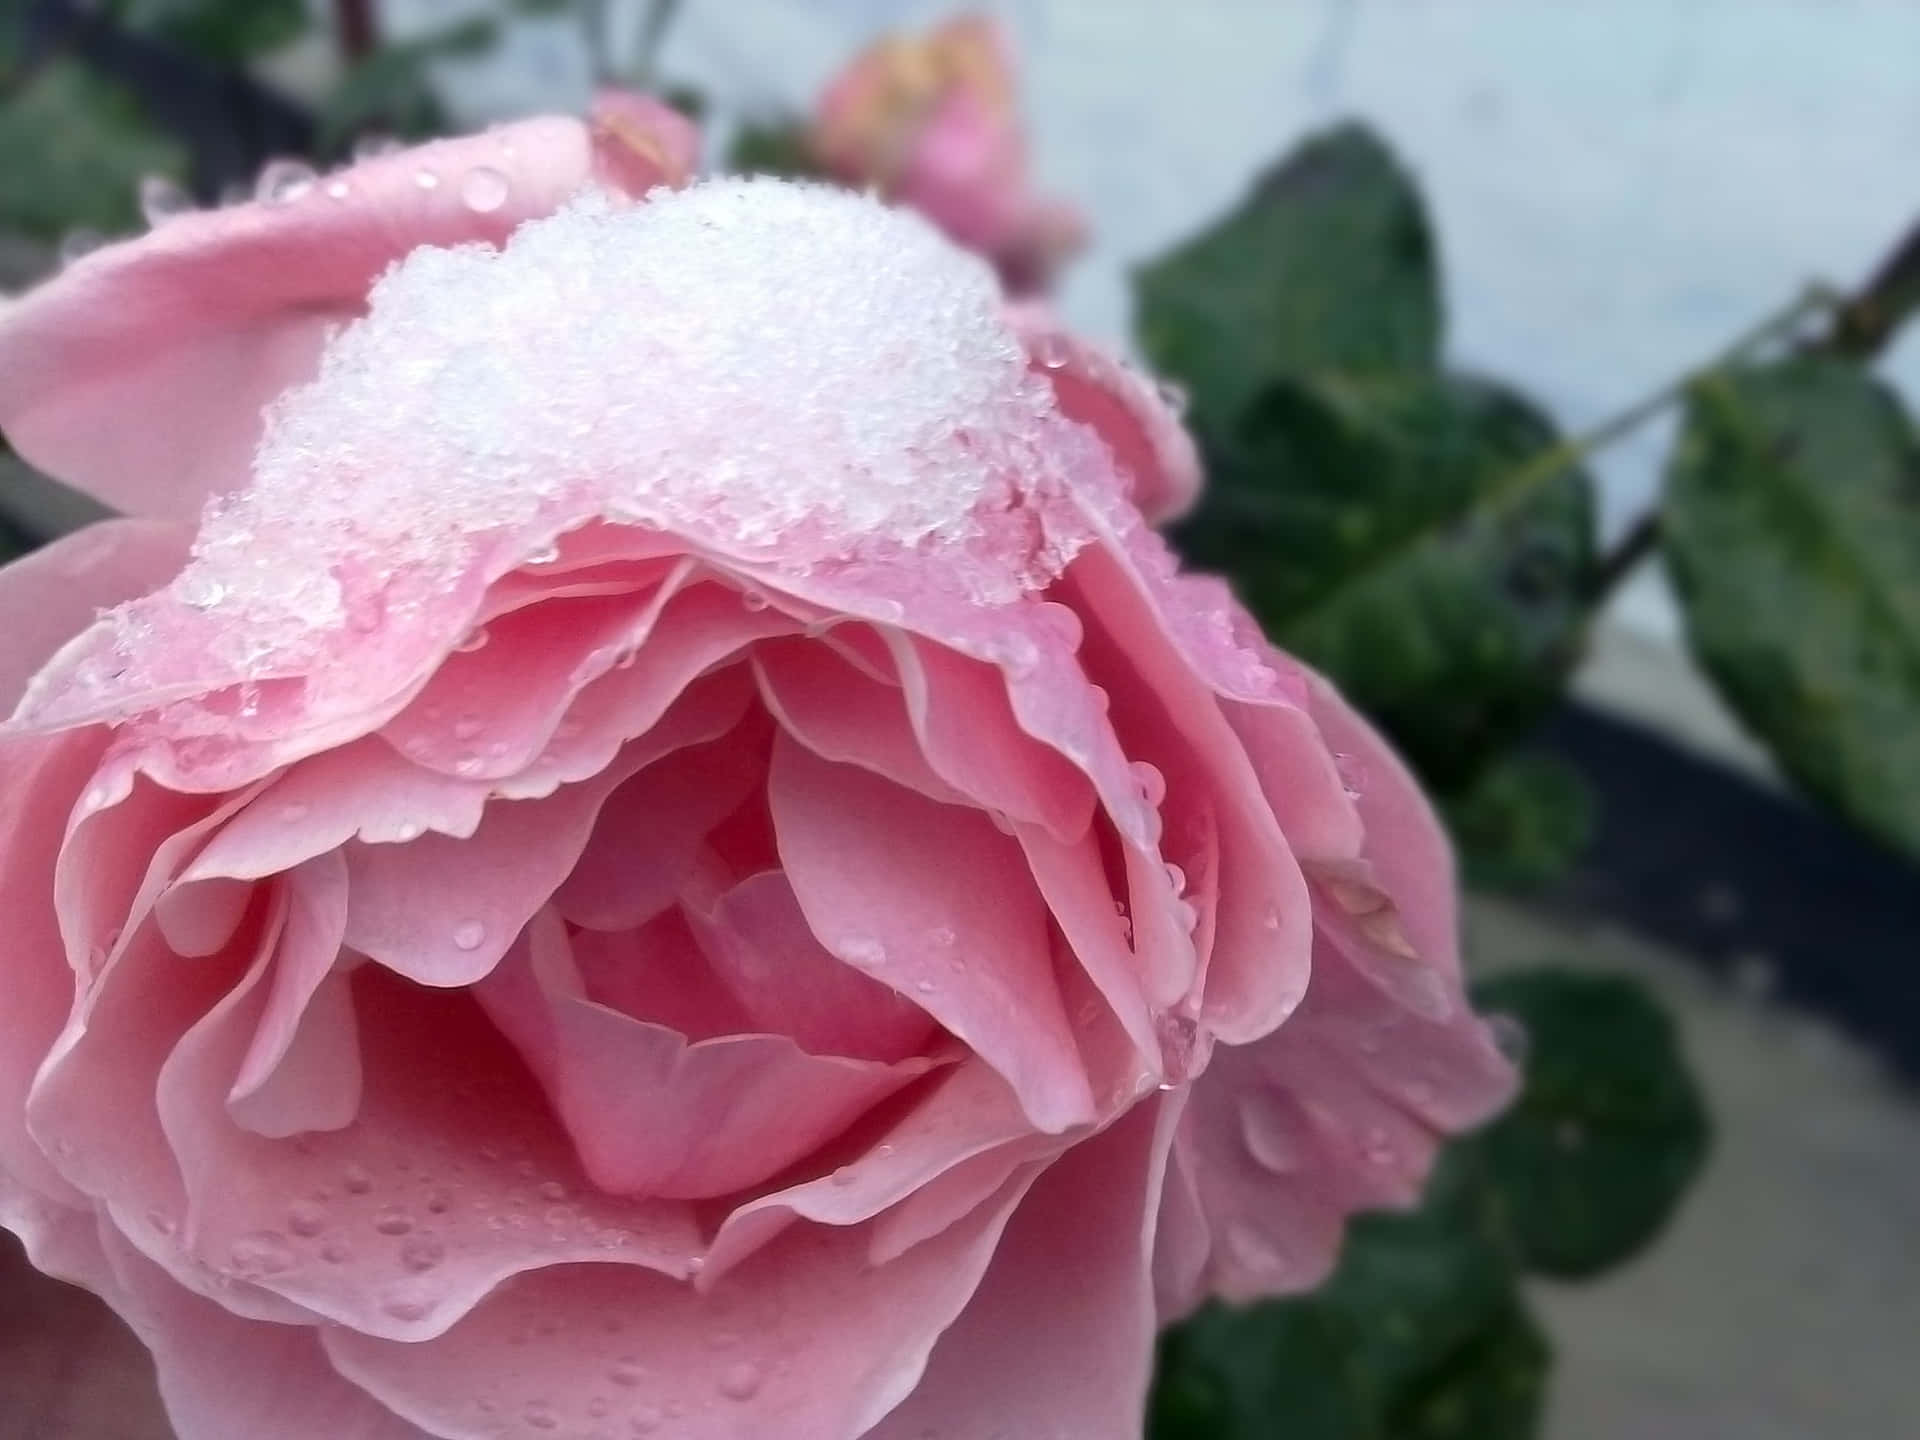 Undolce Promemoria Di Bellezza E Amore - Una Rosa Rosa Delicata.